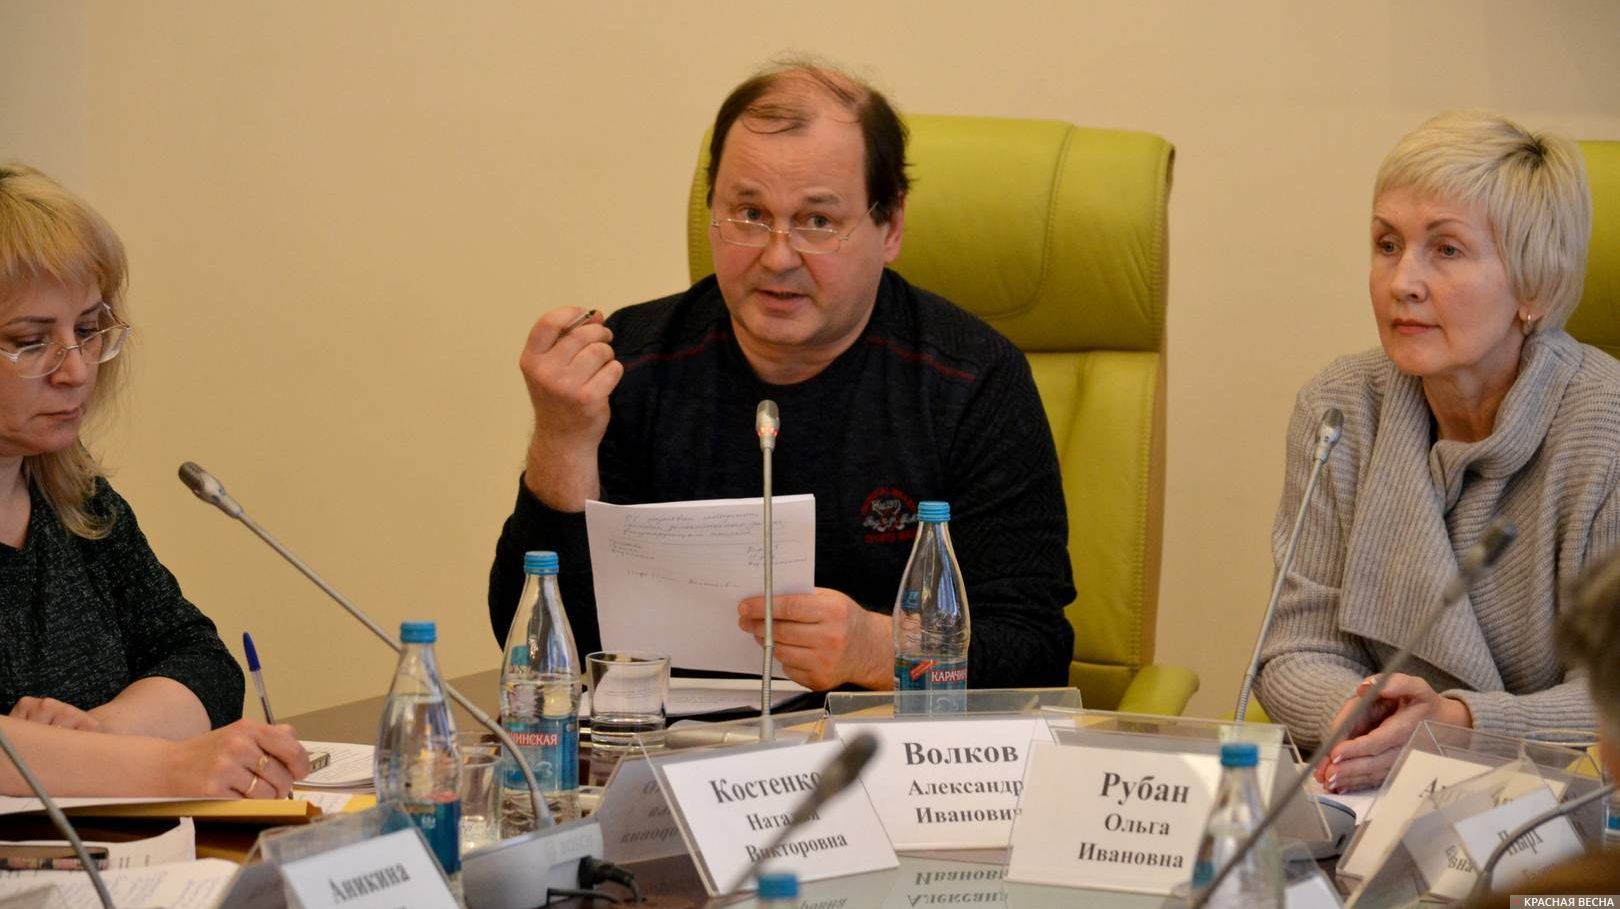 Александр Волков, участник работы круглого стола Общественной палаты, Новосибирск